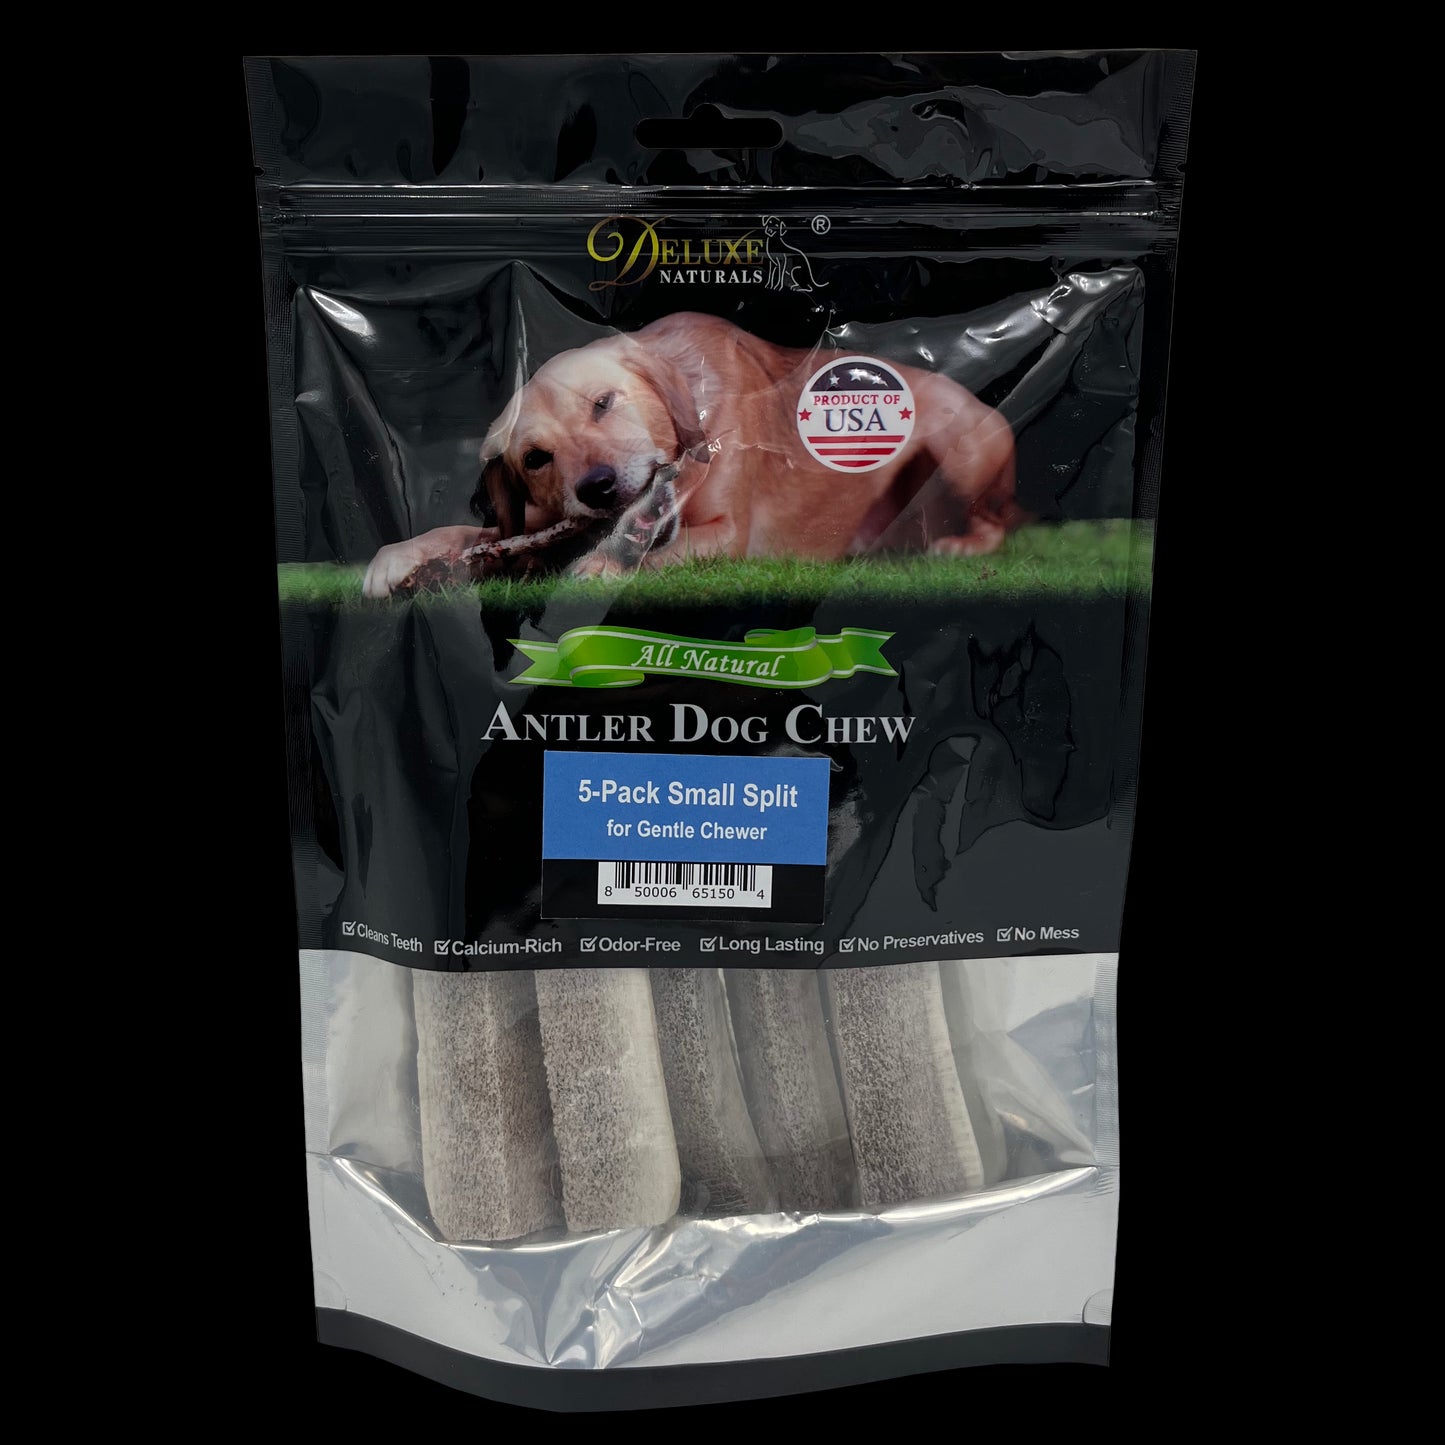 Deluxe Naturals 5-Pack Elk Antler Dog Chew - Small Split